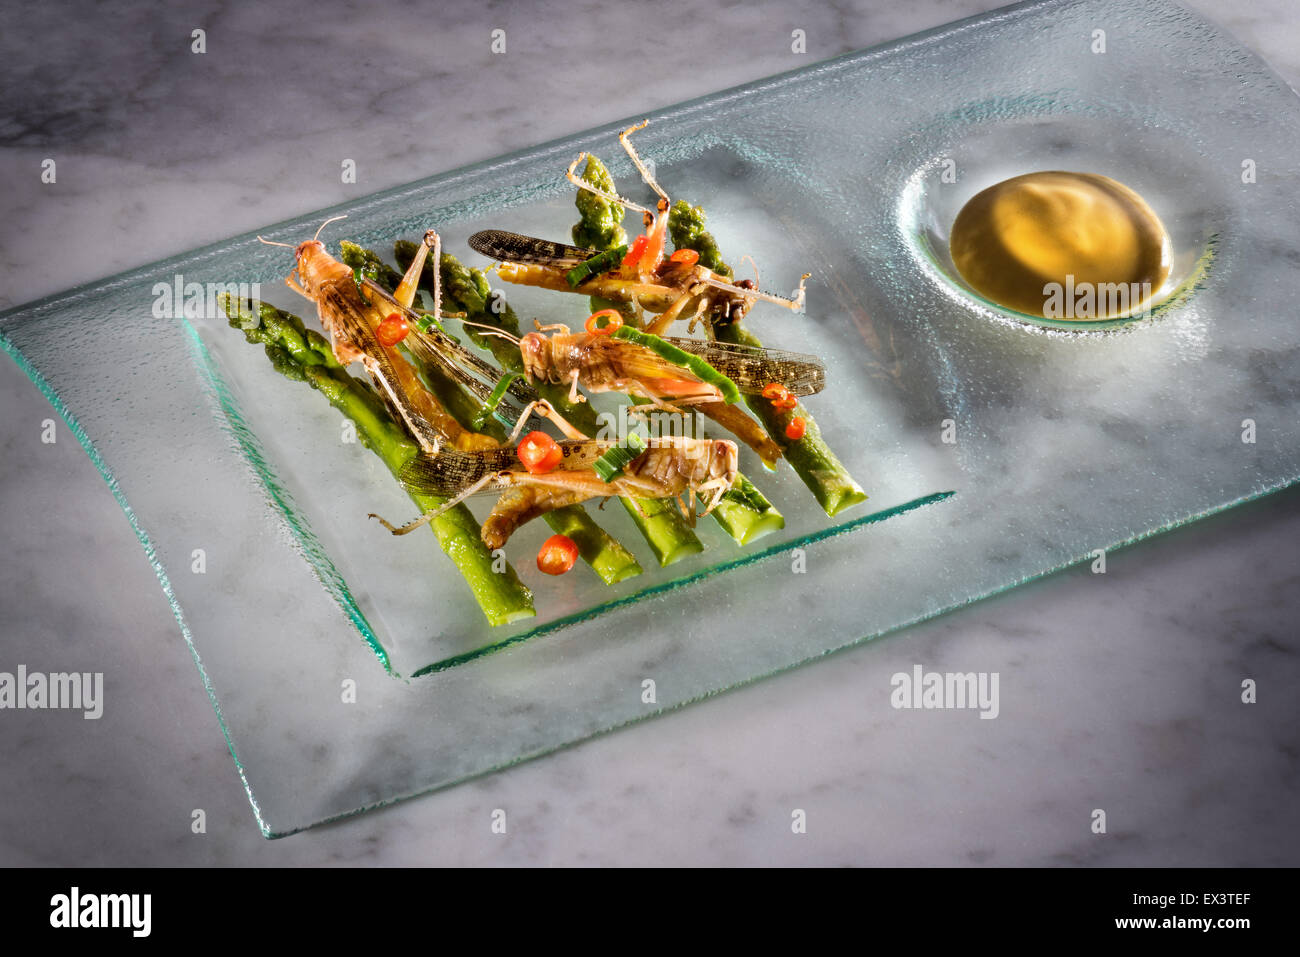 neue Zukunft essen Insekten essen und Salat Kochen Insekten Braten stilvolle gebraten auf Platte wertvolle Quelle von Protein Snack delicio Stockfoto